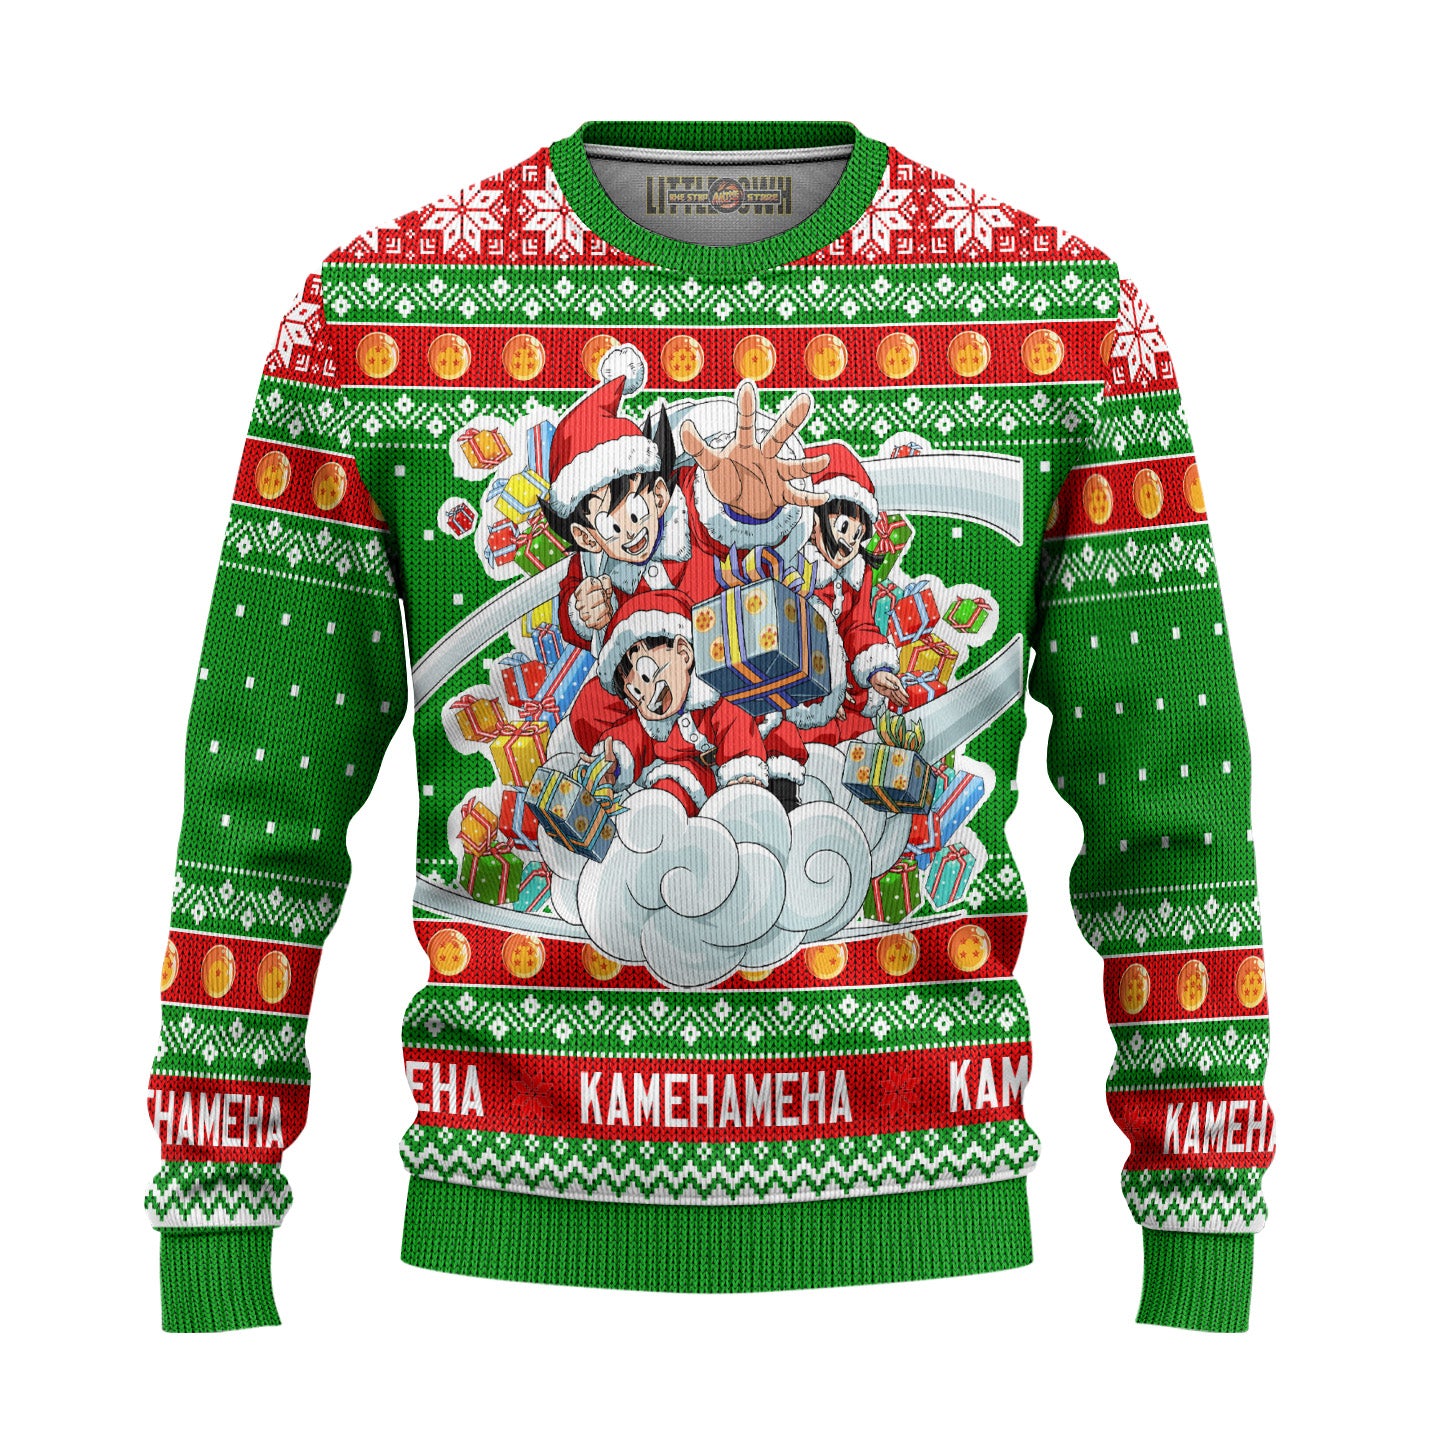 Goku x Gohan x Chi Chi Dragon Ball Anime Ugly Christmas Sweater Gift For Fans